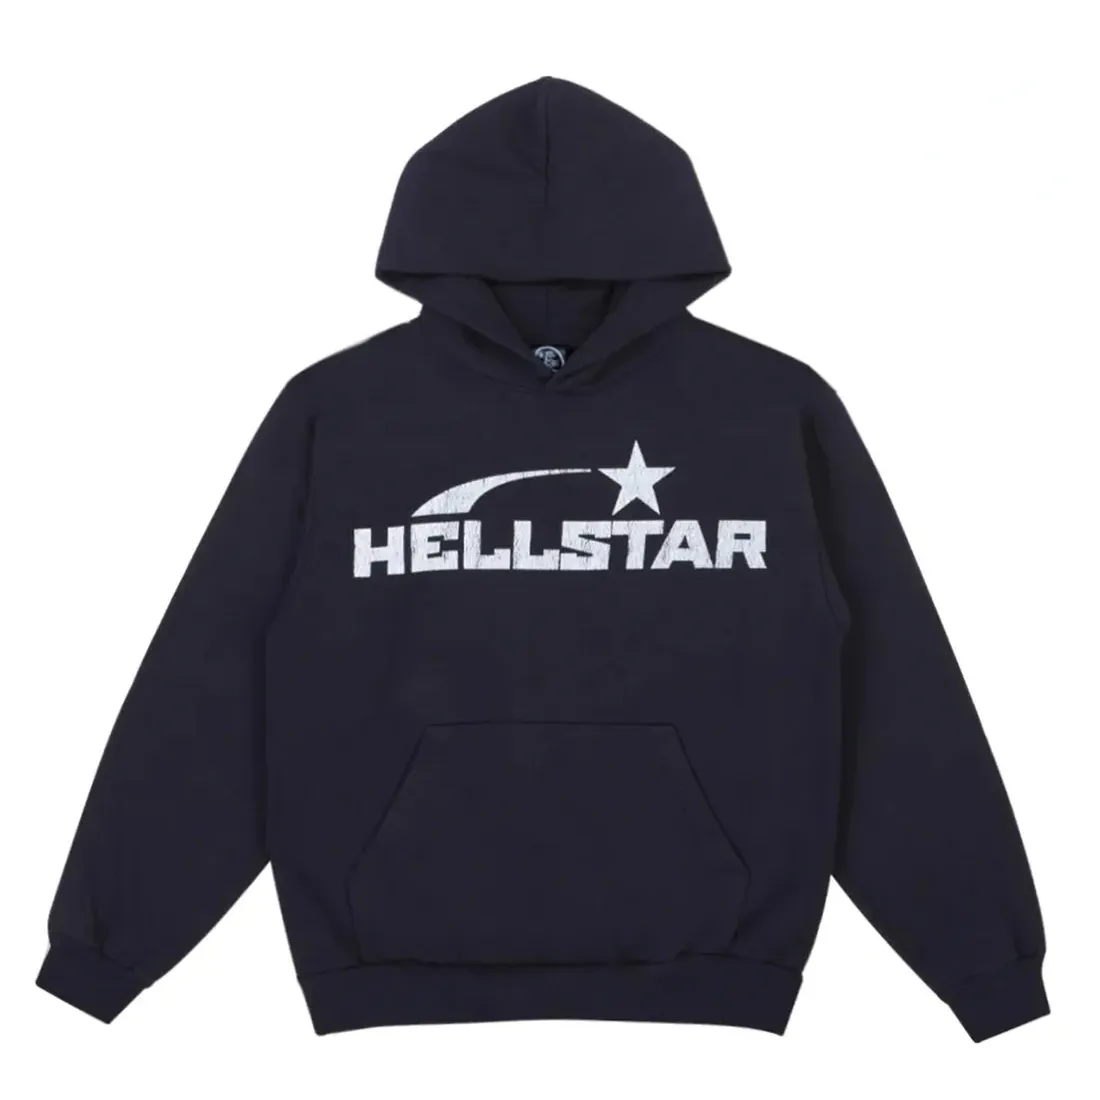 Black Hellstar Hoodie | Where To Buy Black Hellstar Hoodie | Buy Black Hellstar Hoodie | Black Hellstar Hoodie For Sale | Black Hellstar Hoodie For Women